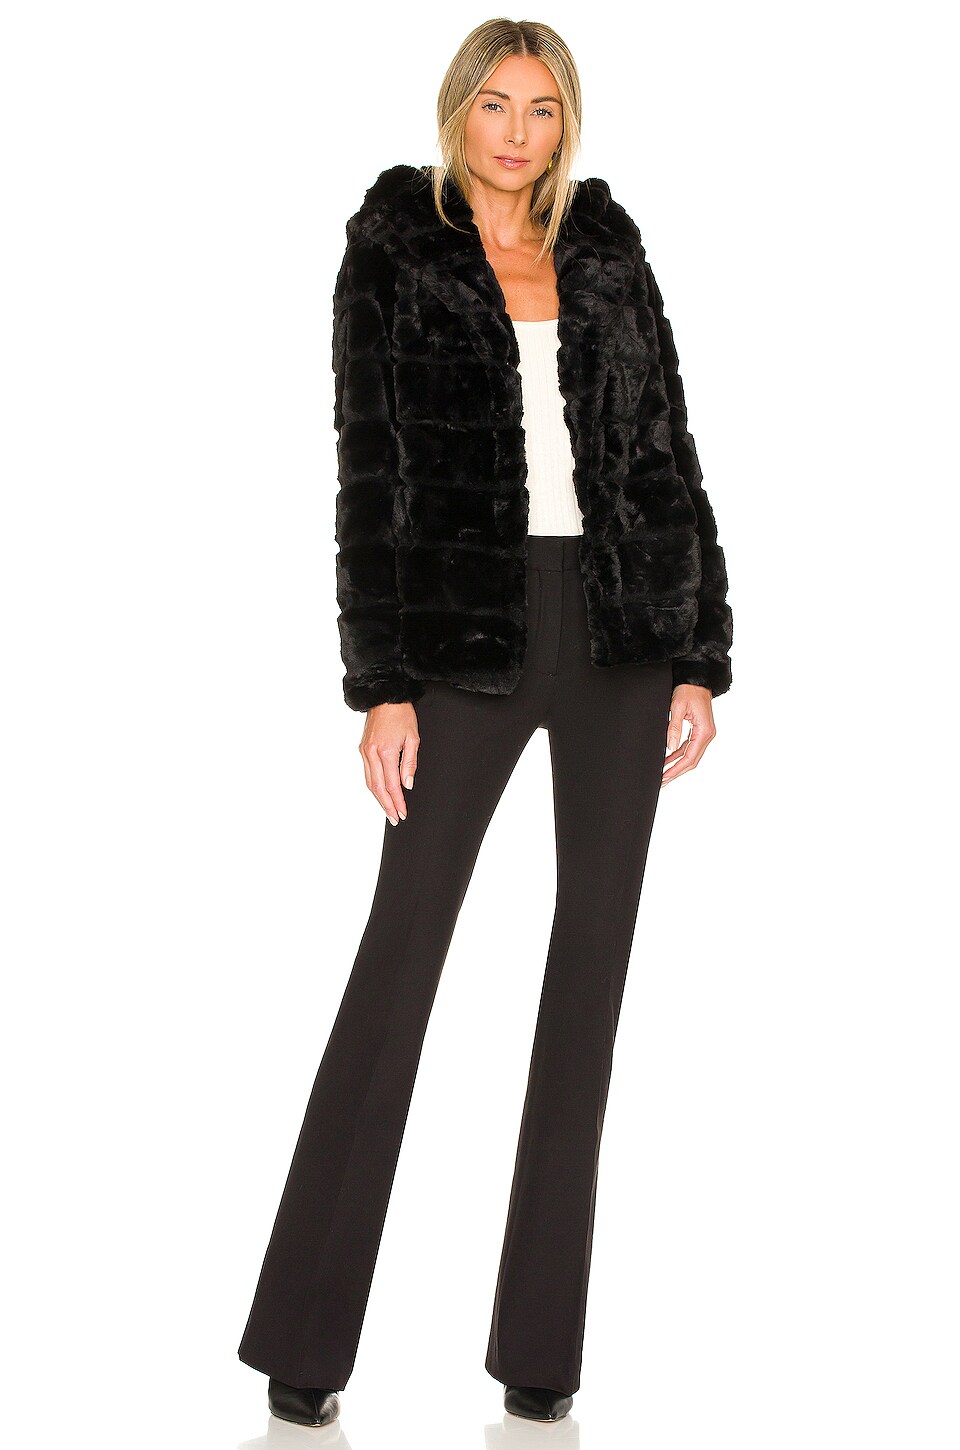 Apparis Goldie 4.0 Faux Fur Jacket in Noir